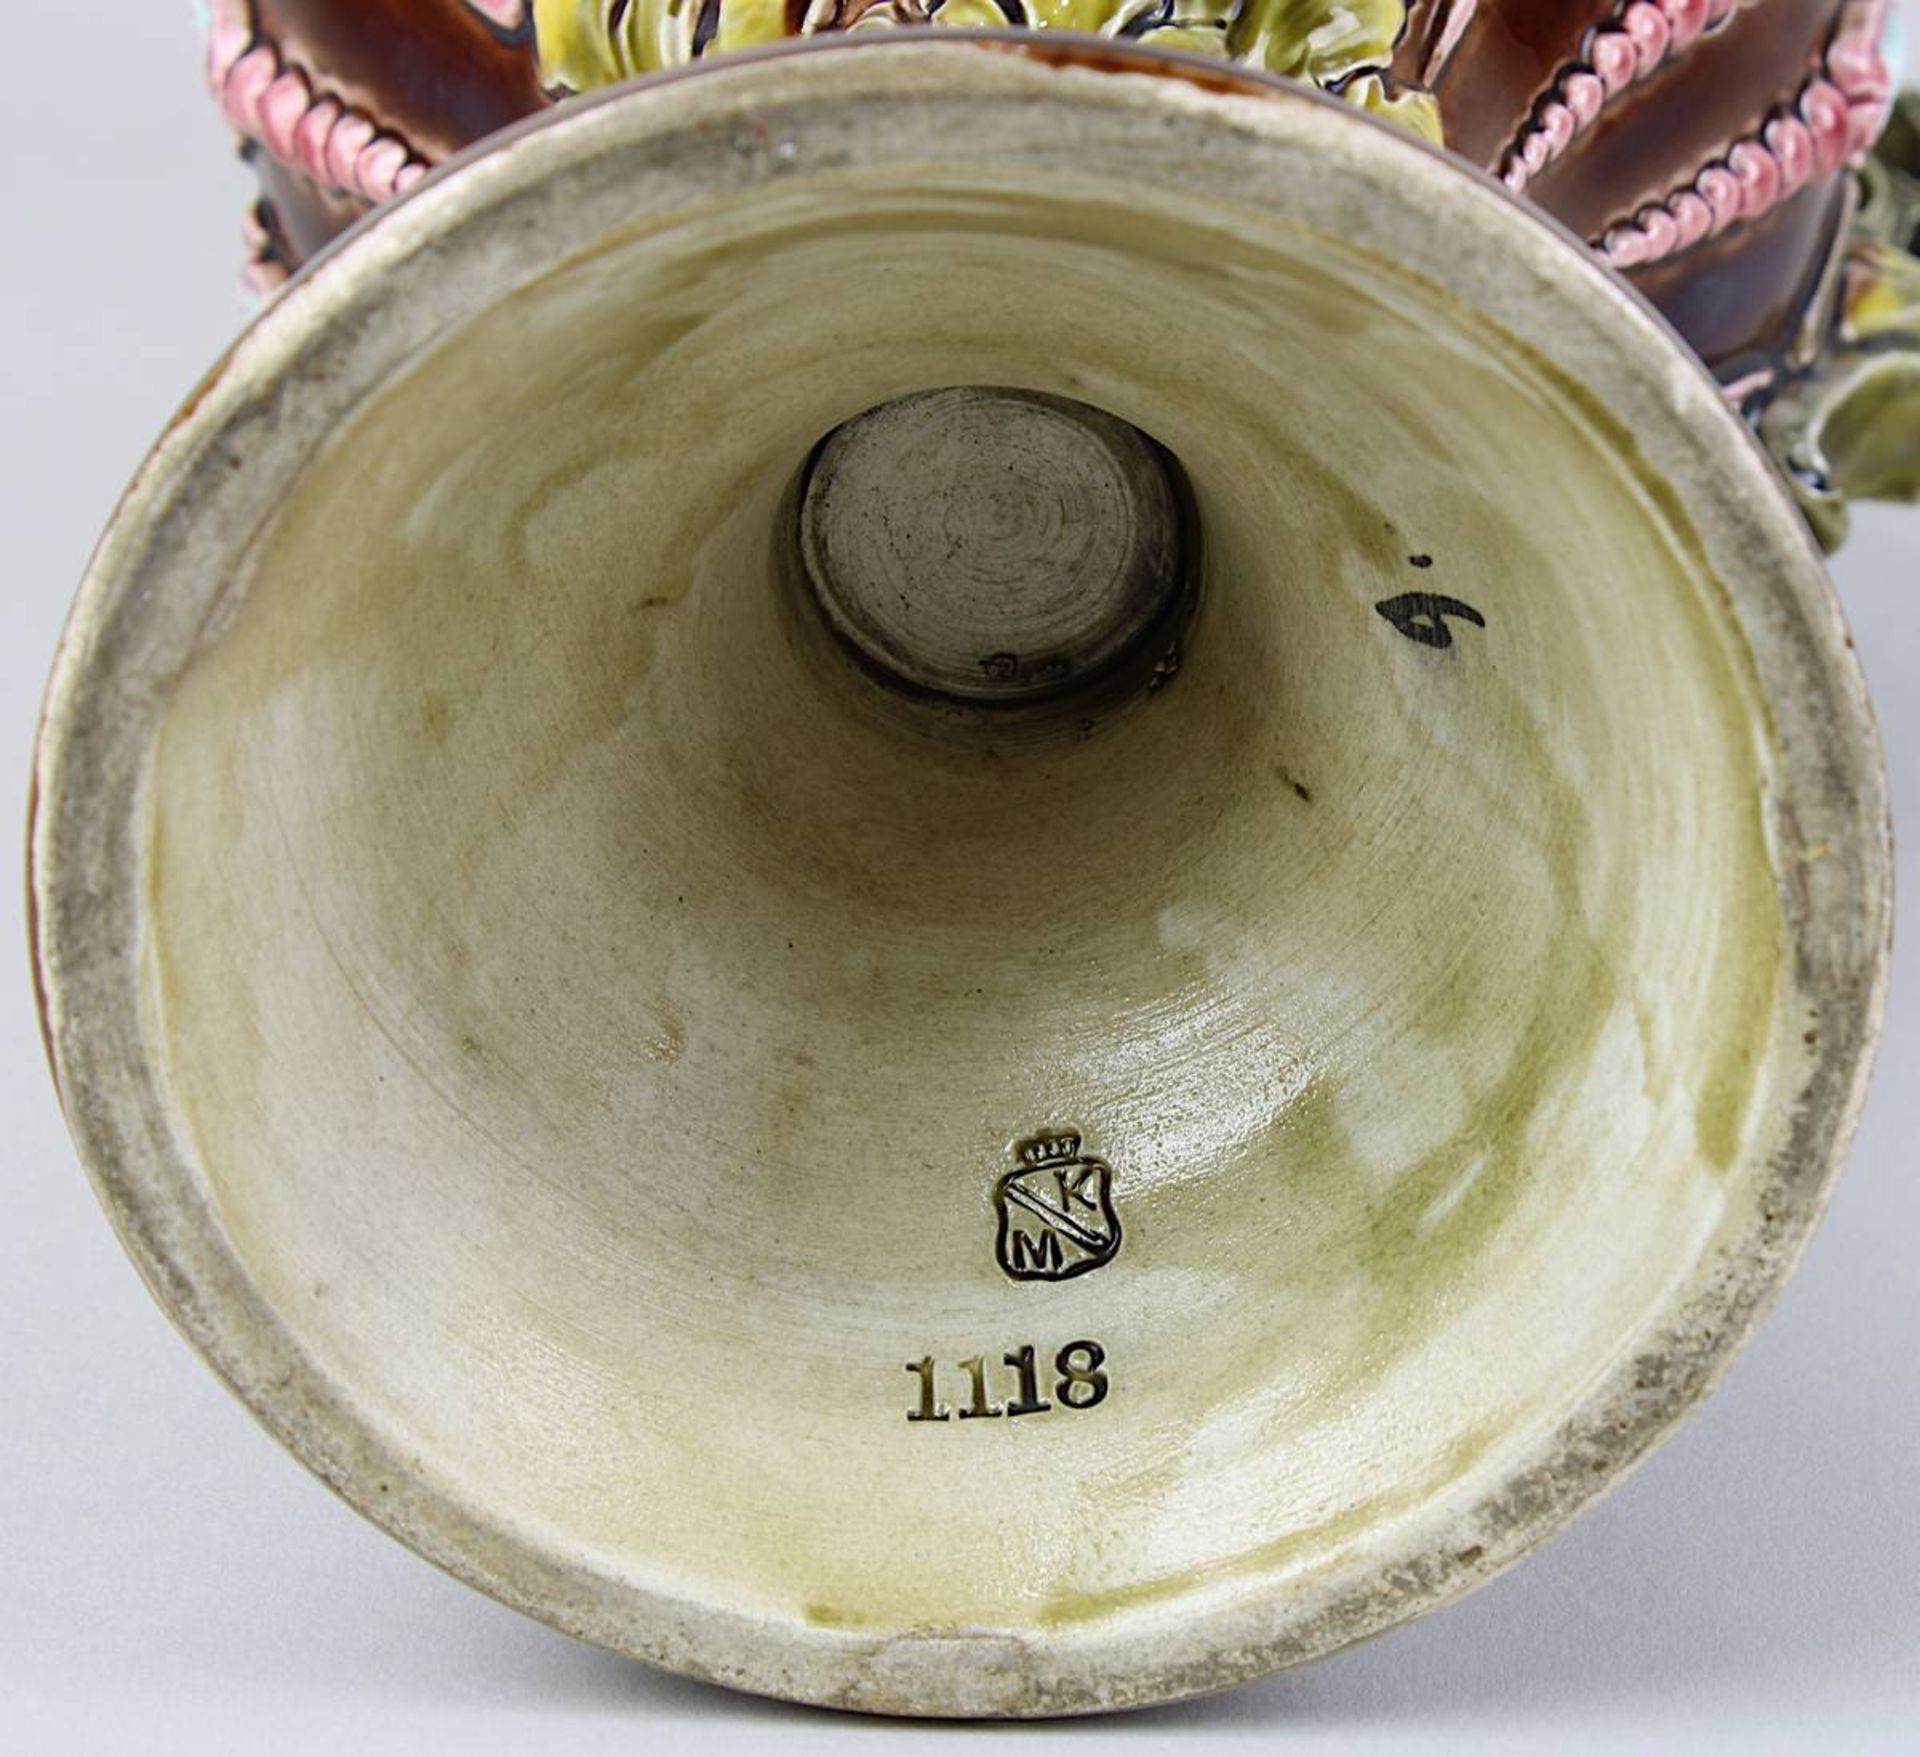 Paar Historismus-Keramikvasen mit reliefiertem floralem Dekor, Krause R. M. in Schweidnitz um - Image 2 of 2